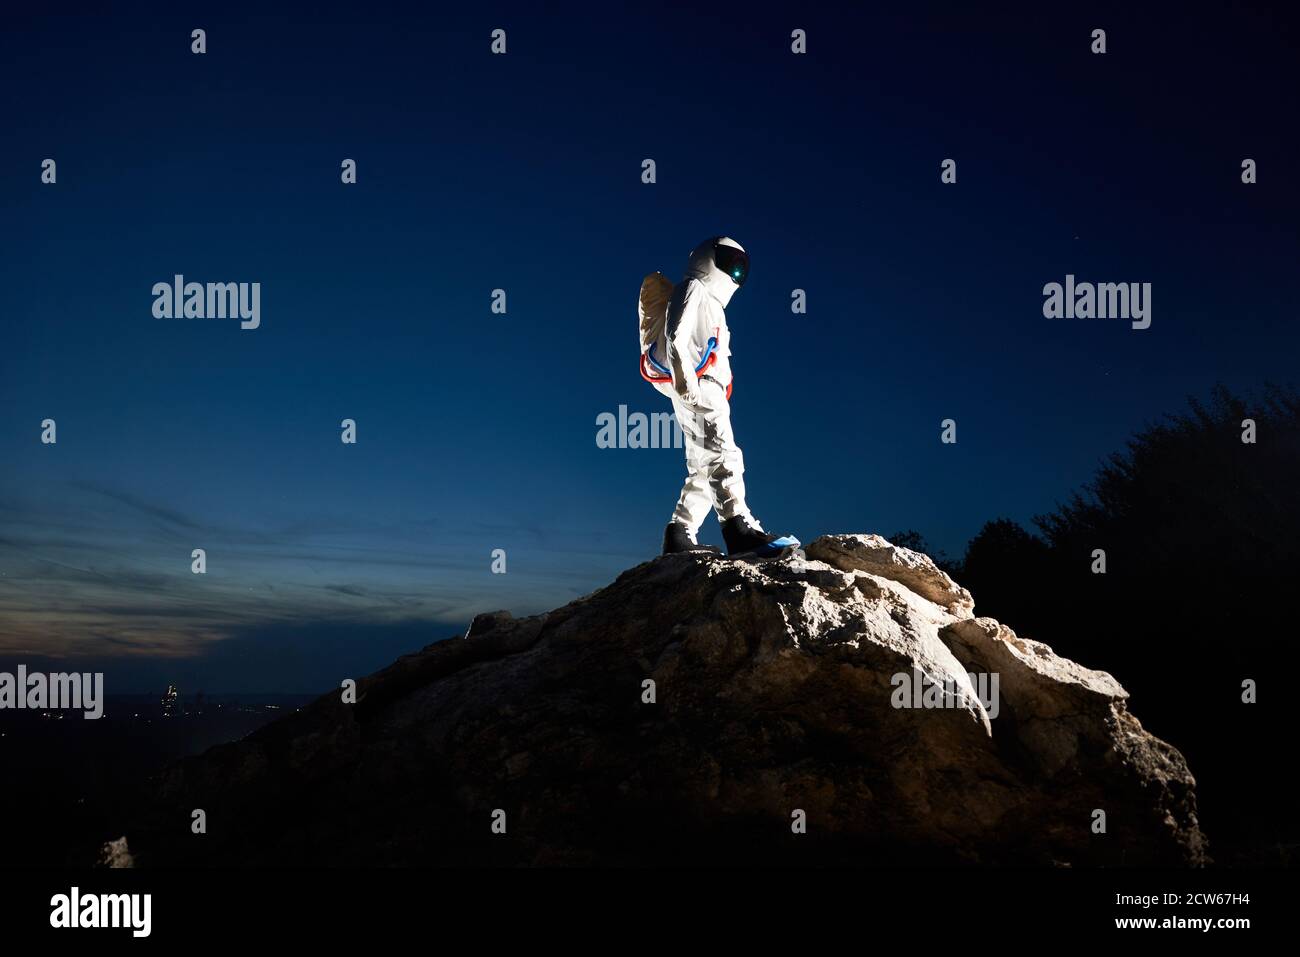 Volle Länge der Raumfahrer Erreichen der Spitze des felsigen Hügel mit schönen blauen Himmel auf Hintergrund. Astronaut trägt weißen Raumanzug mit Helm. Konzept der Weltraumforschung durch menschliche Rasse. Stockfoto